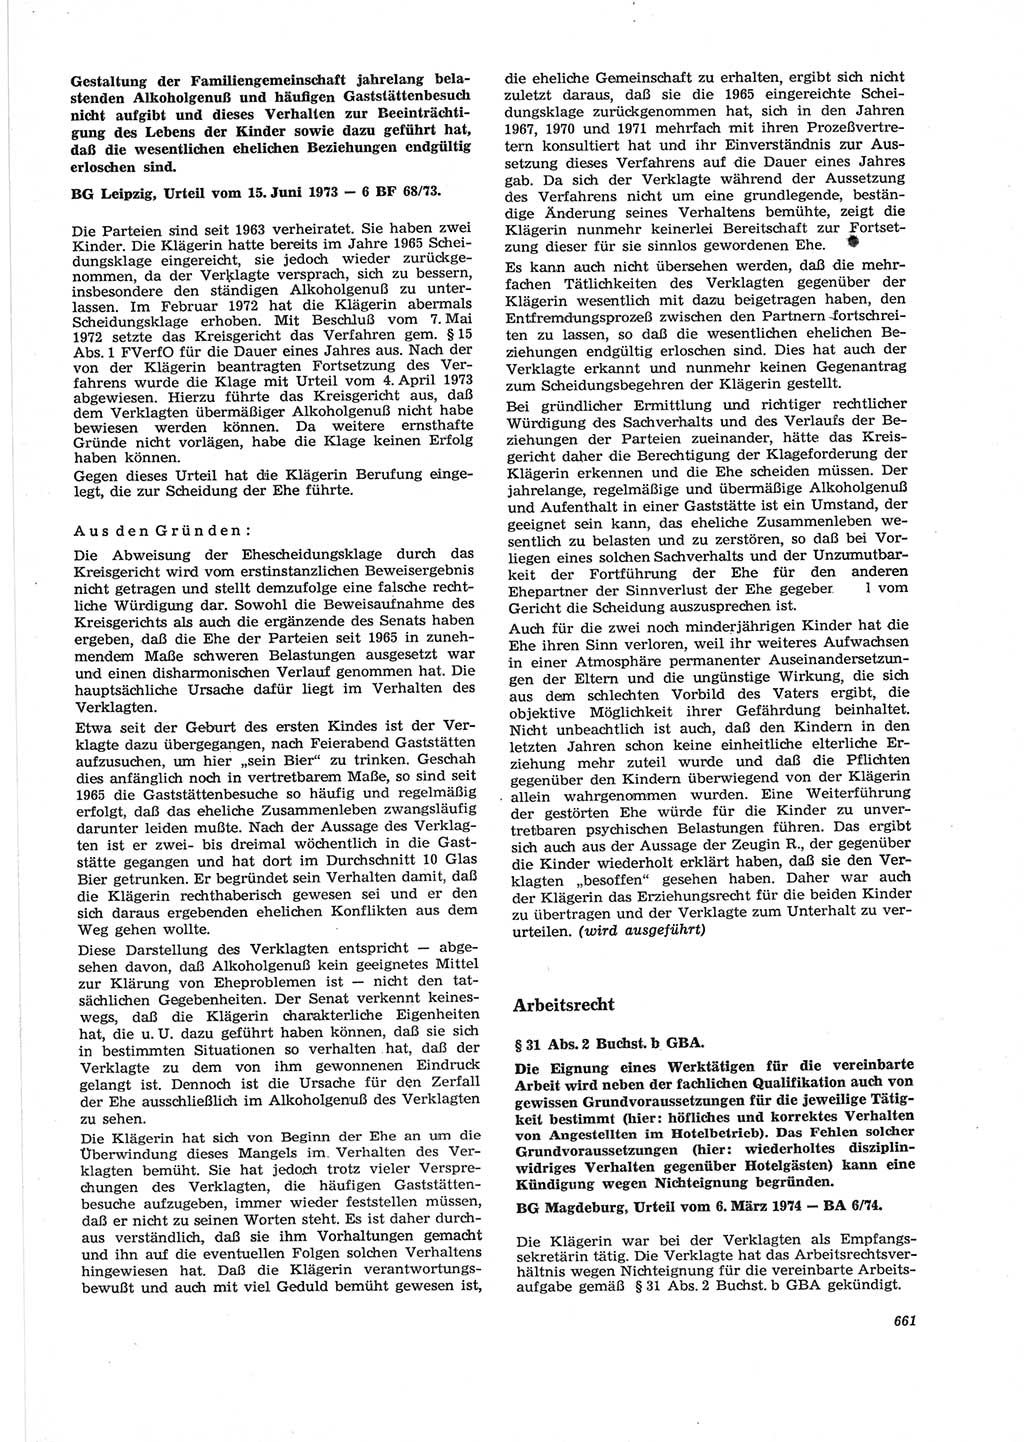 Neue Justiz (NJ), Zeitschrift für Recht und Rechtswissenschaft [Deutsche Demokratische Republik (DDR)], 28. Jahrgang 1974, Seite 661 (NJ DDR 1974, S. 661)